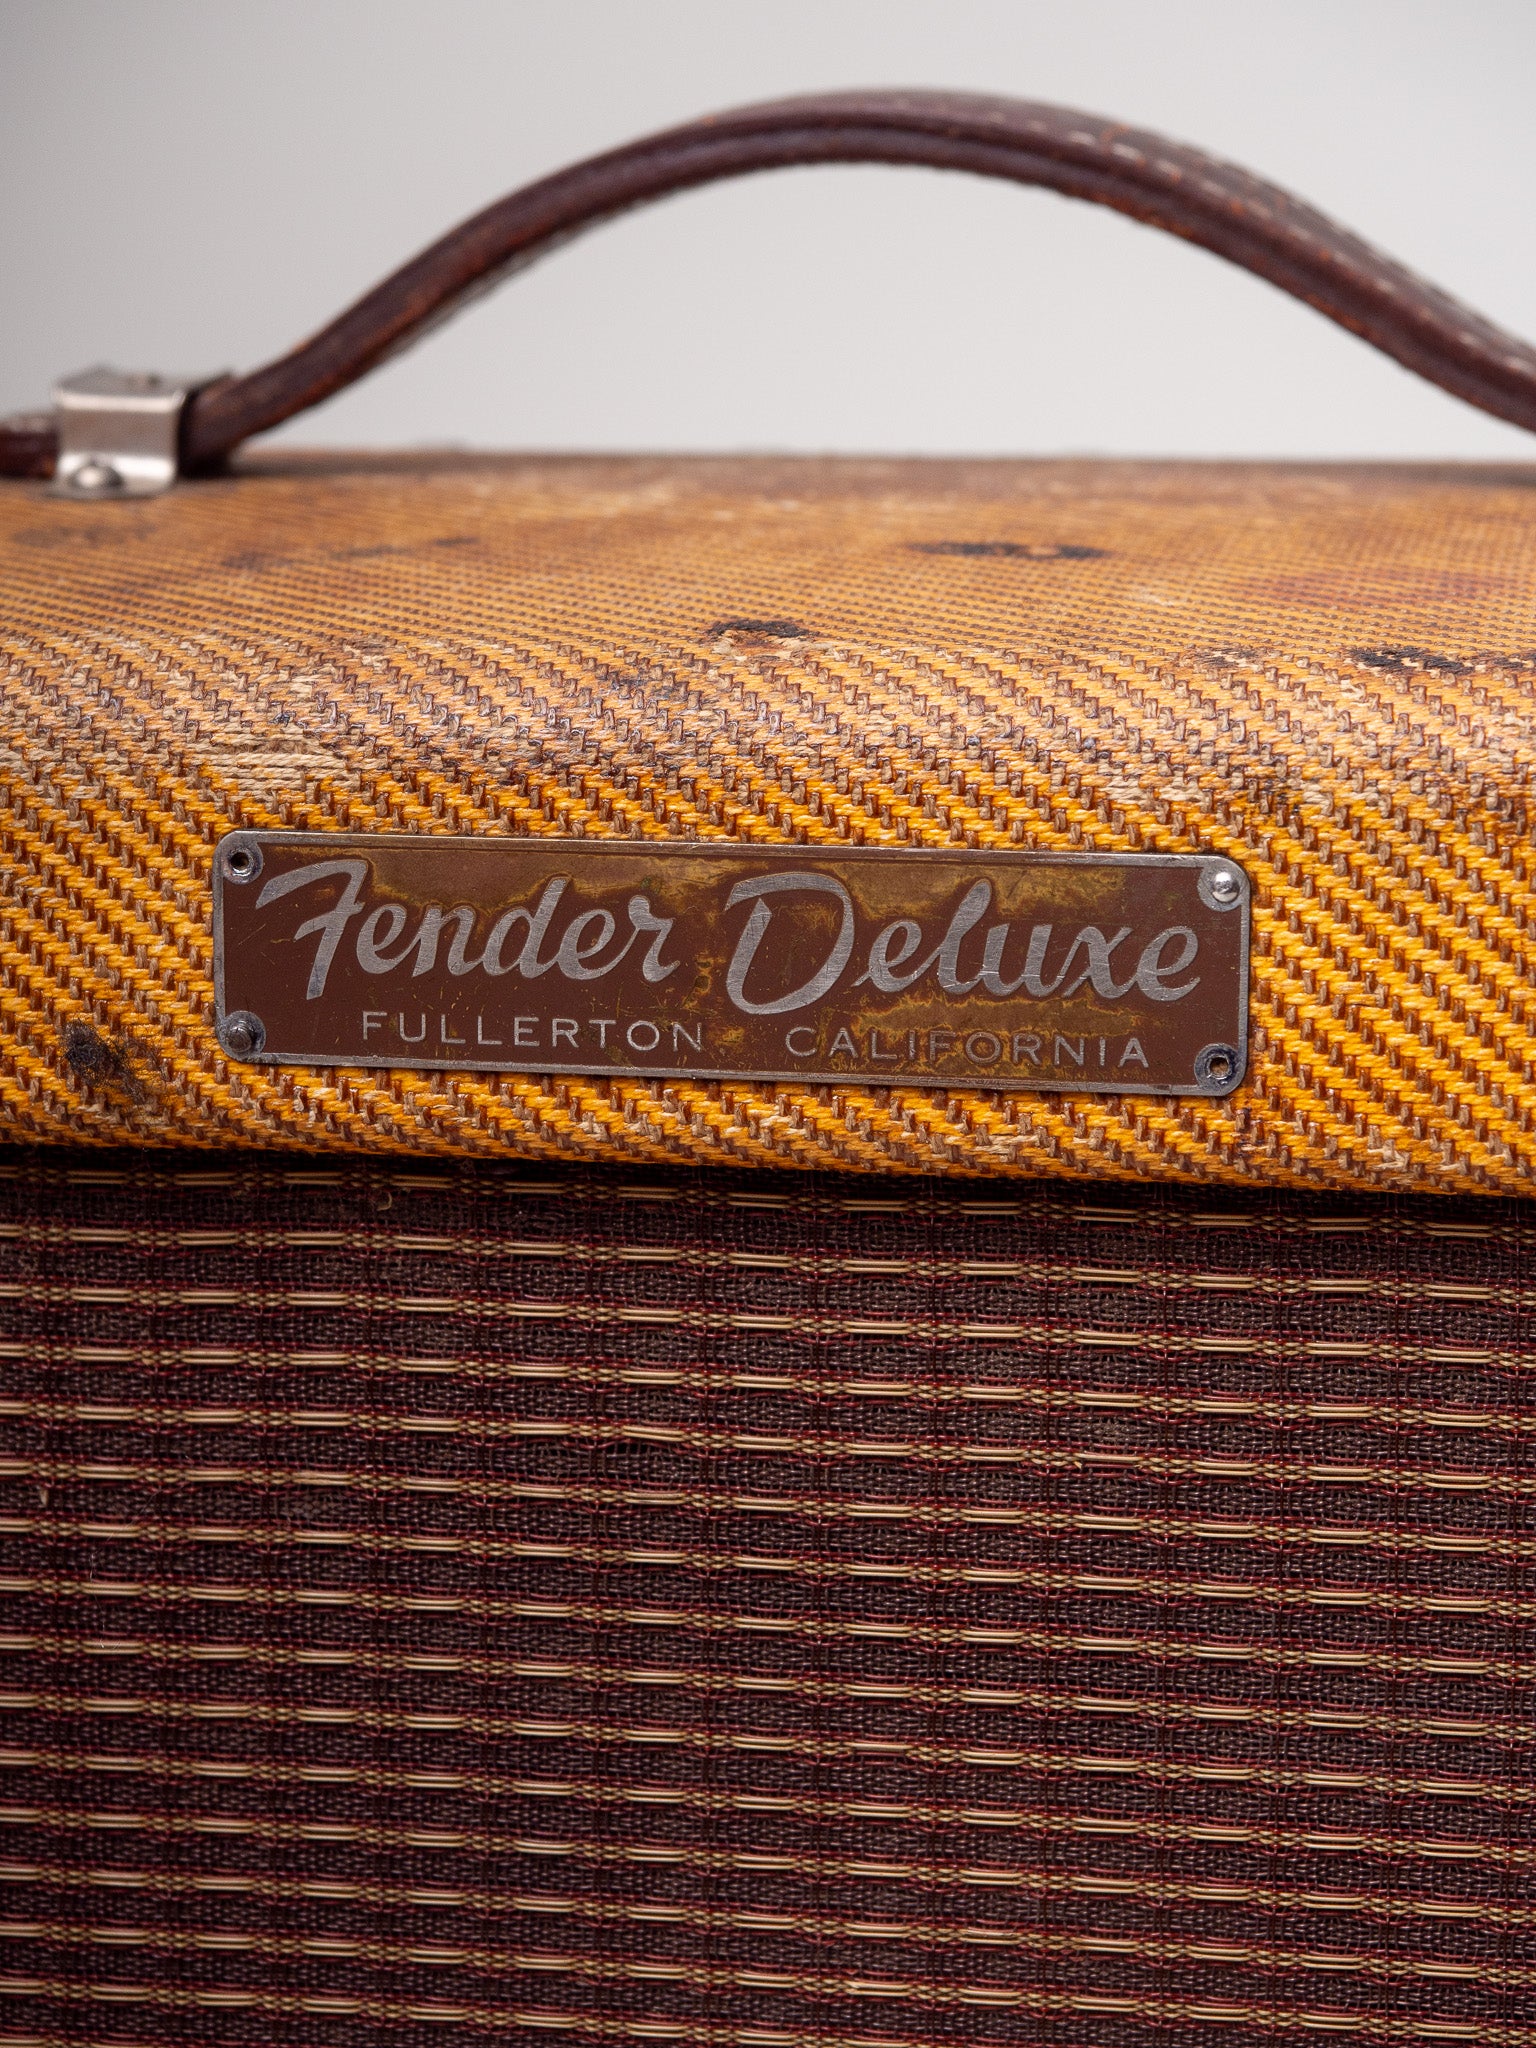 1959 Fender Deluxe